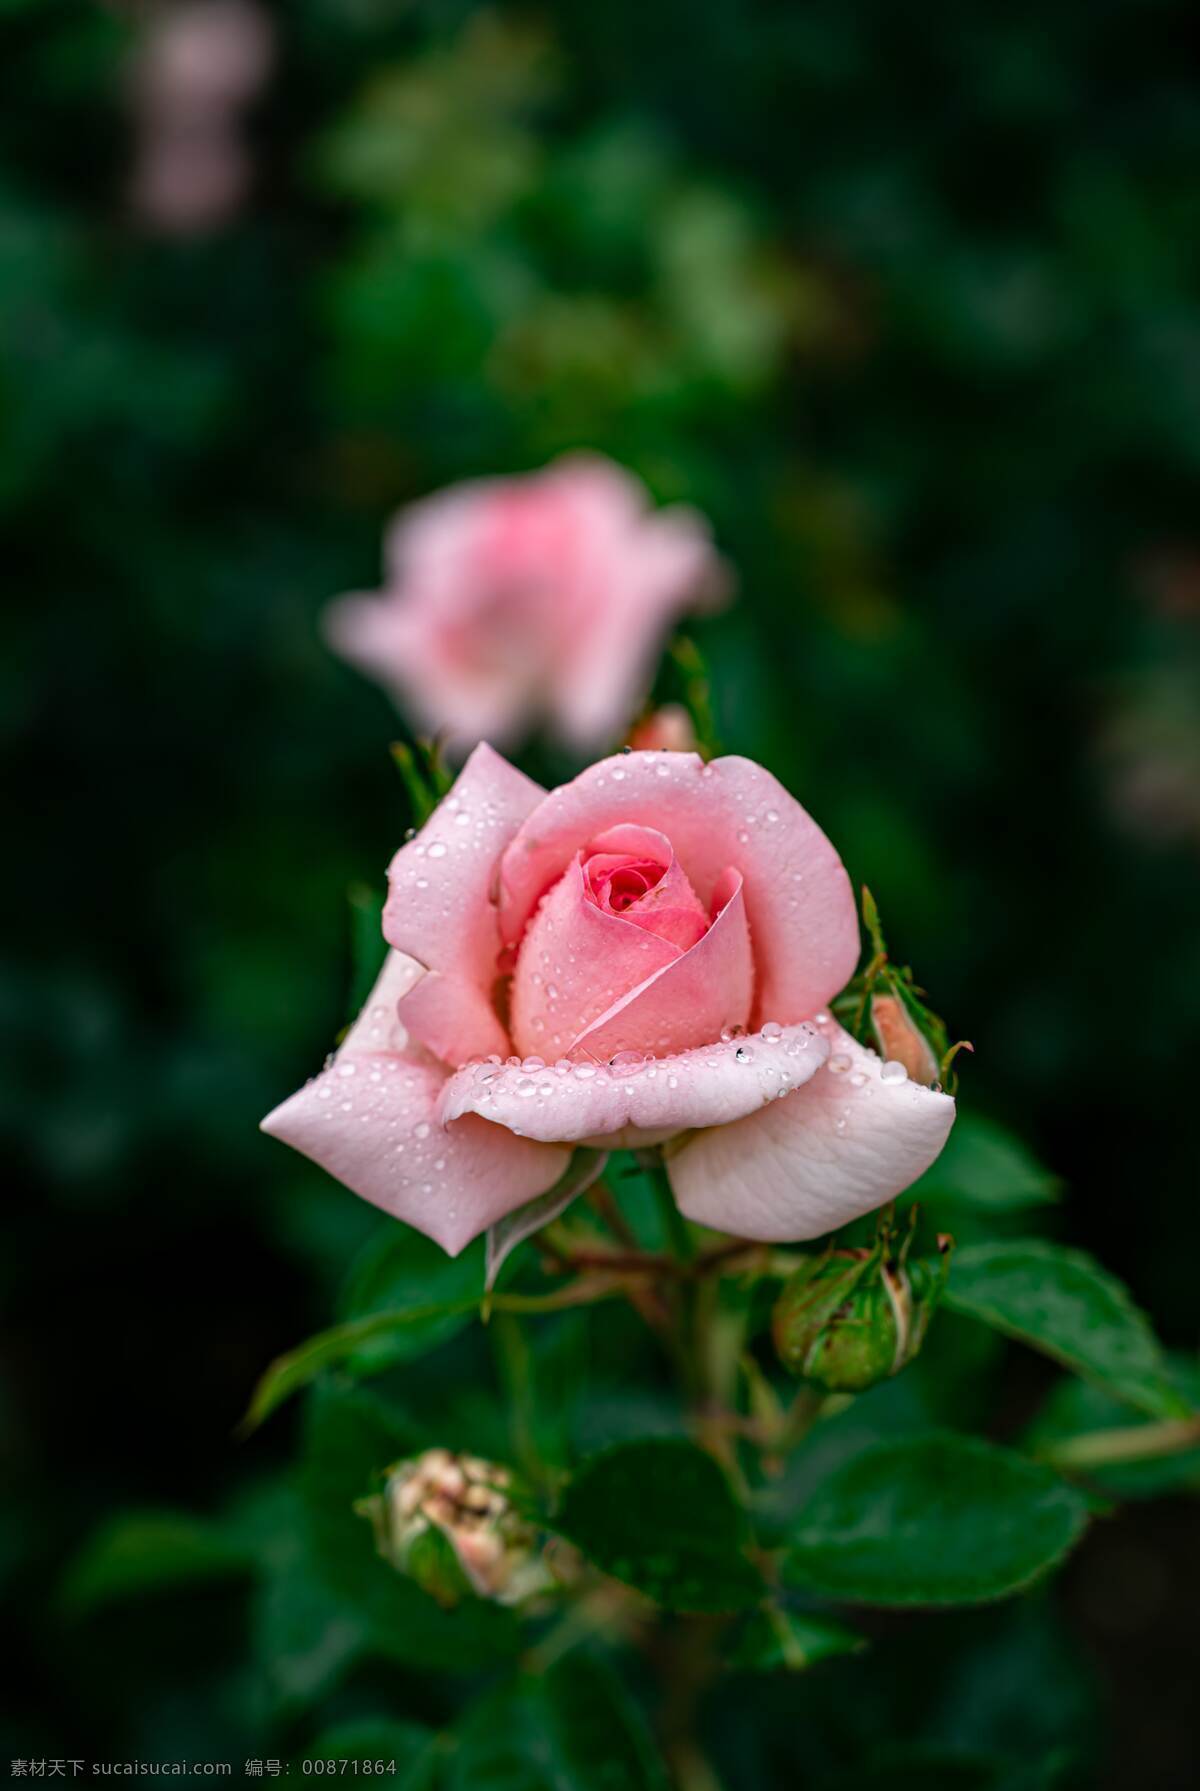 月季图片 月季 玫瑰 粉玫瑰 欧月 花朵 鲜花 蔷薇 花 唯美背景 浪漫背景 小清新 节日花朵 生物世界 花草